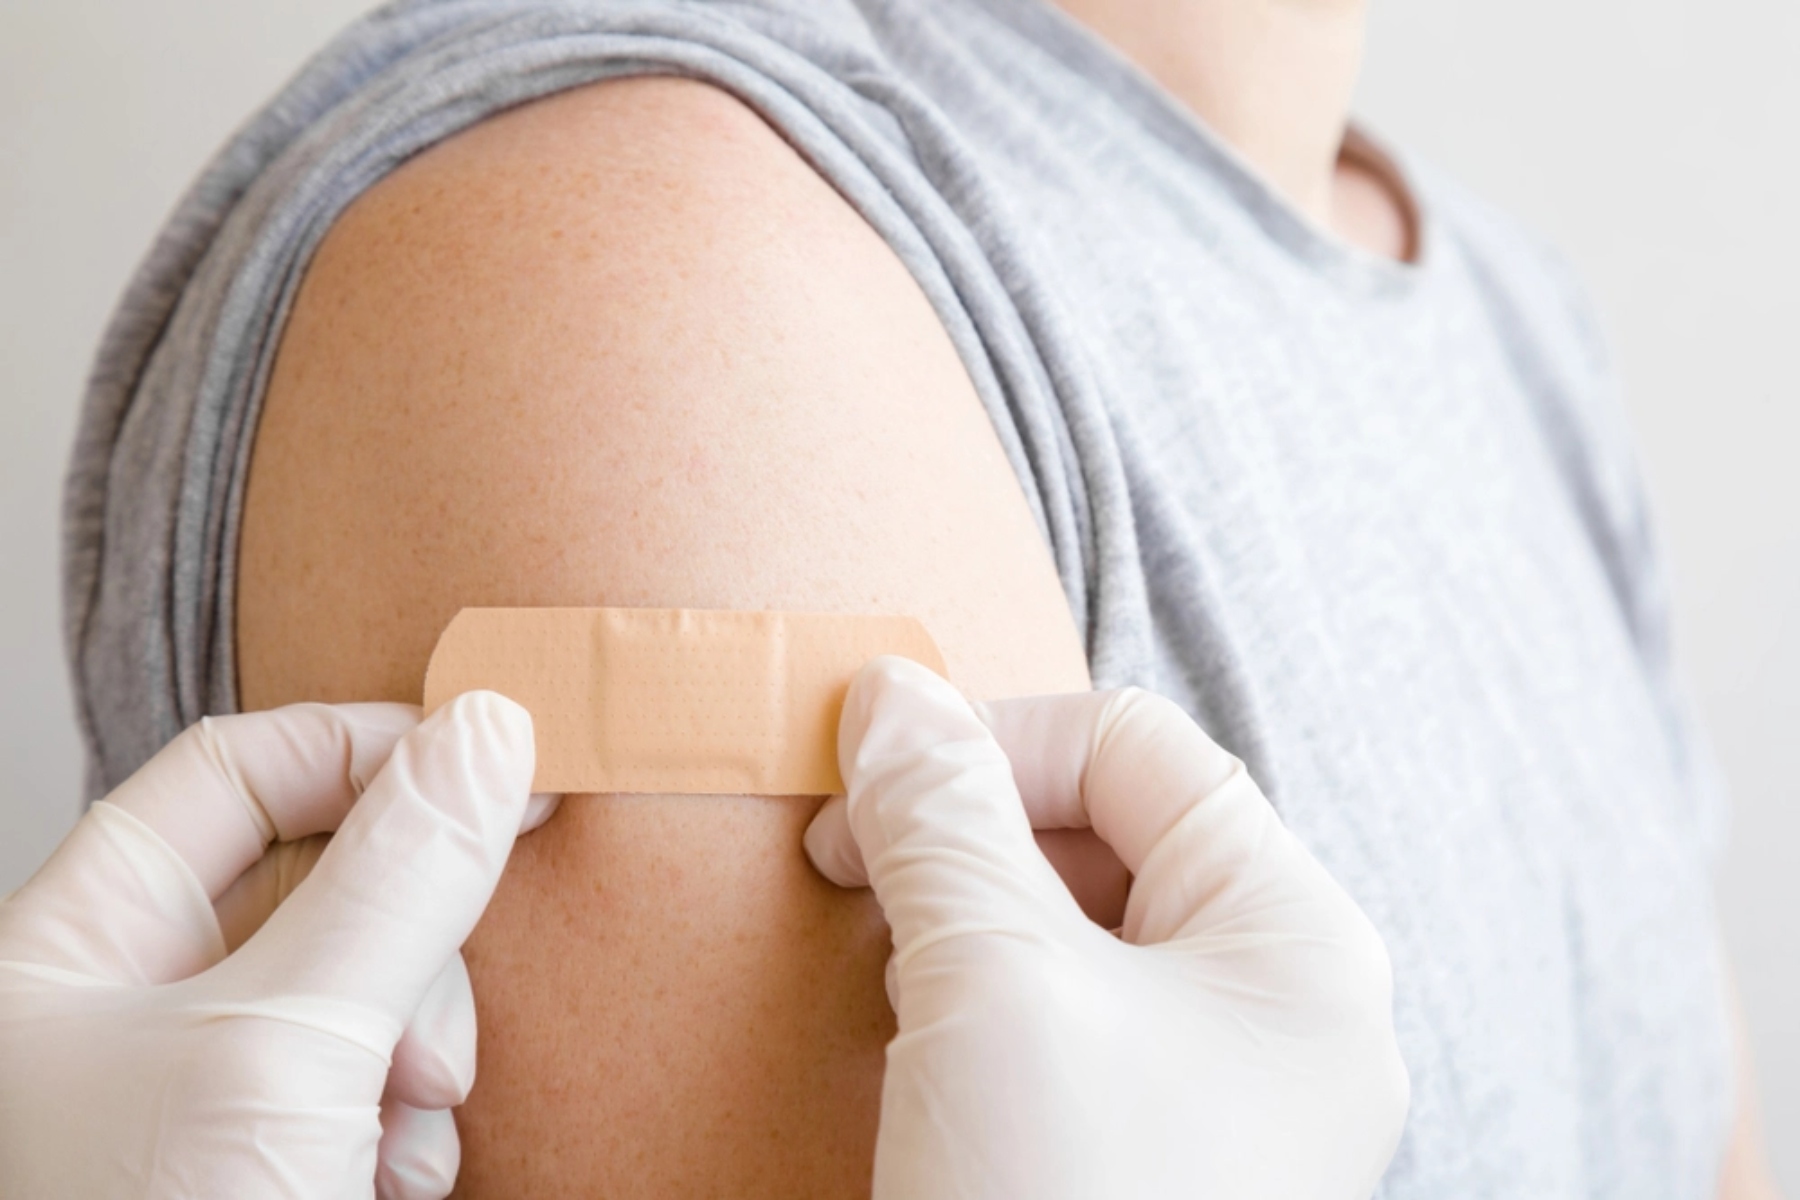 Εμβολιασμοί ΟΗΕ: 25 εκατομμύρια παιδιά δεν εμβολιάστηκαν απέναντι σε κοινές ασθένειες λόγω Covid